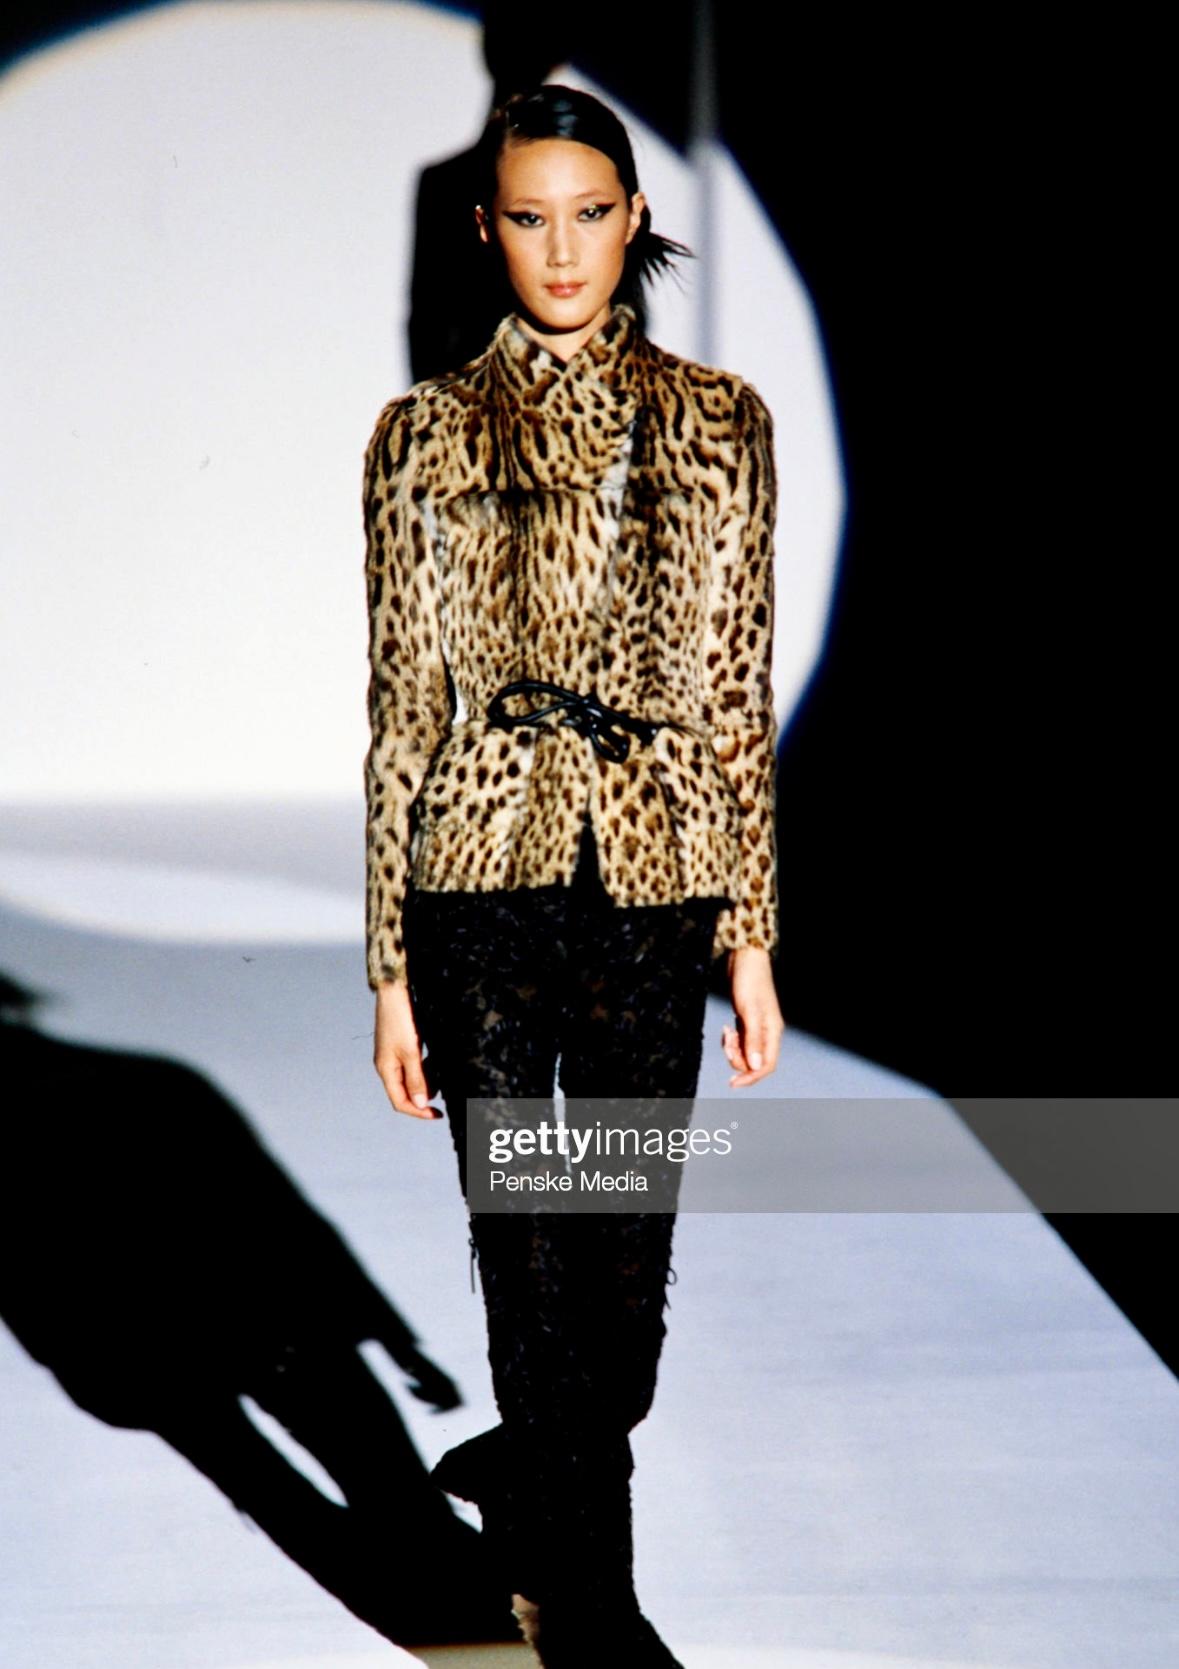 Présentation d'un incroyable manteau de fourrure Gucci à imprimé léopard, conçu par Tom Ford. Issu de la collection Automne/Hiver 1999, ce manteau a fait ses débuts sur les podiums de la saison et a également été mis en valeur dans la campagne